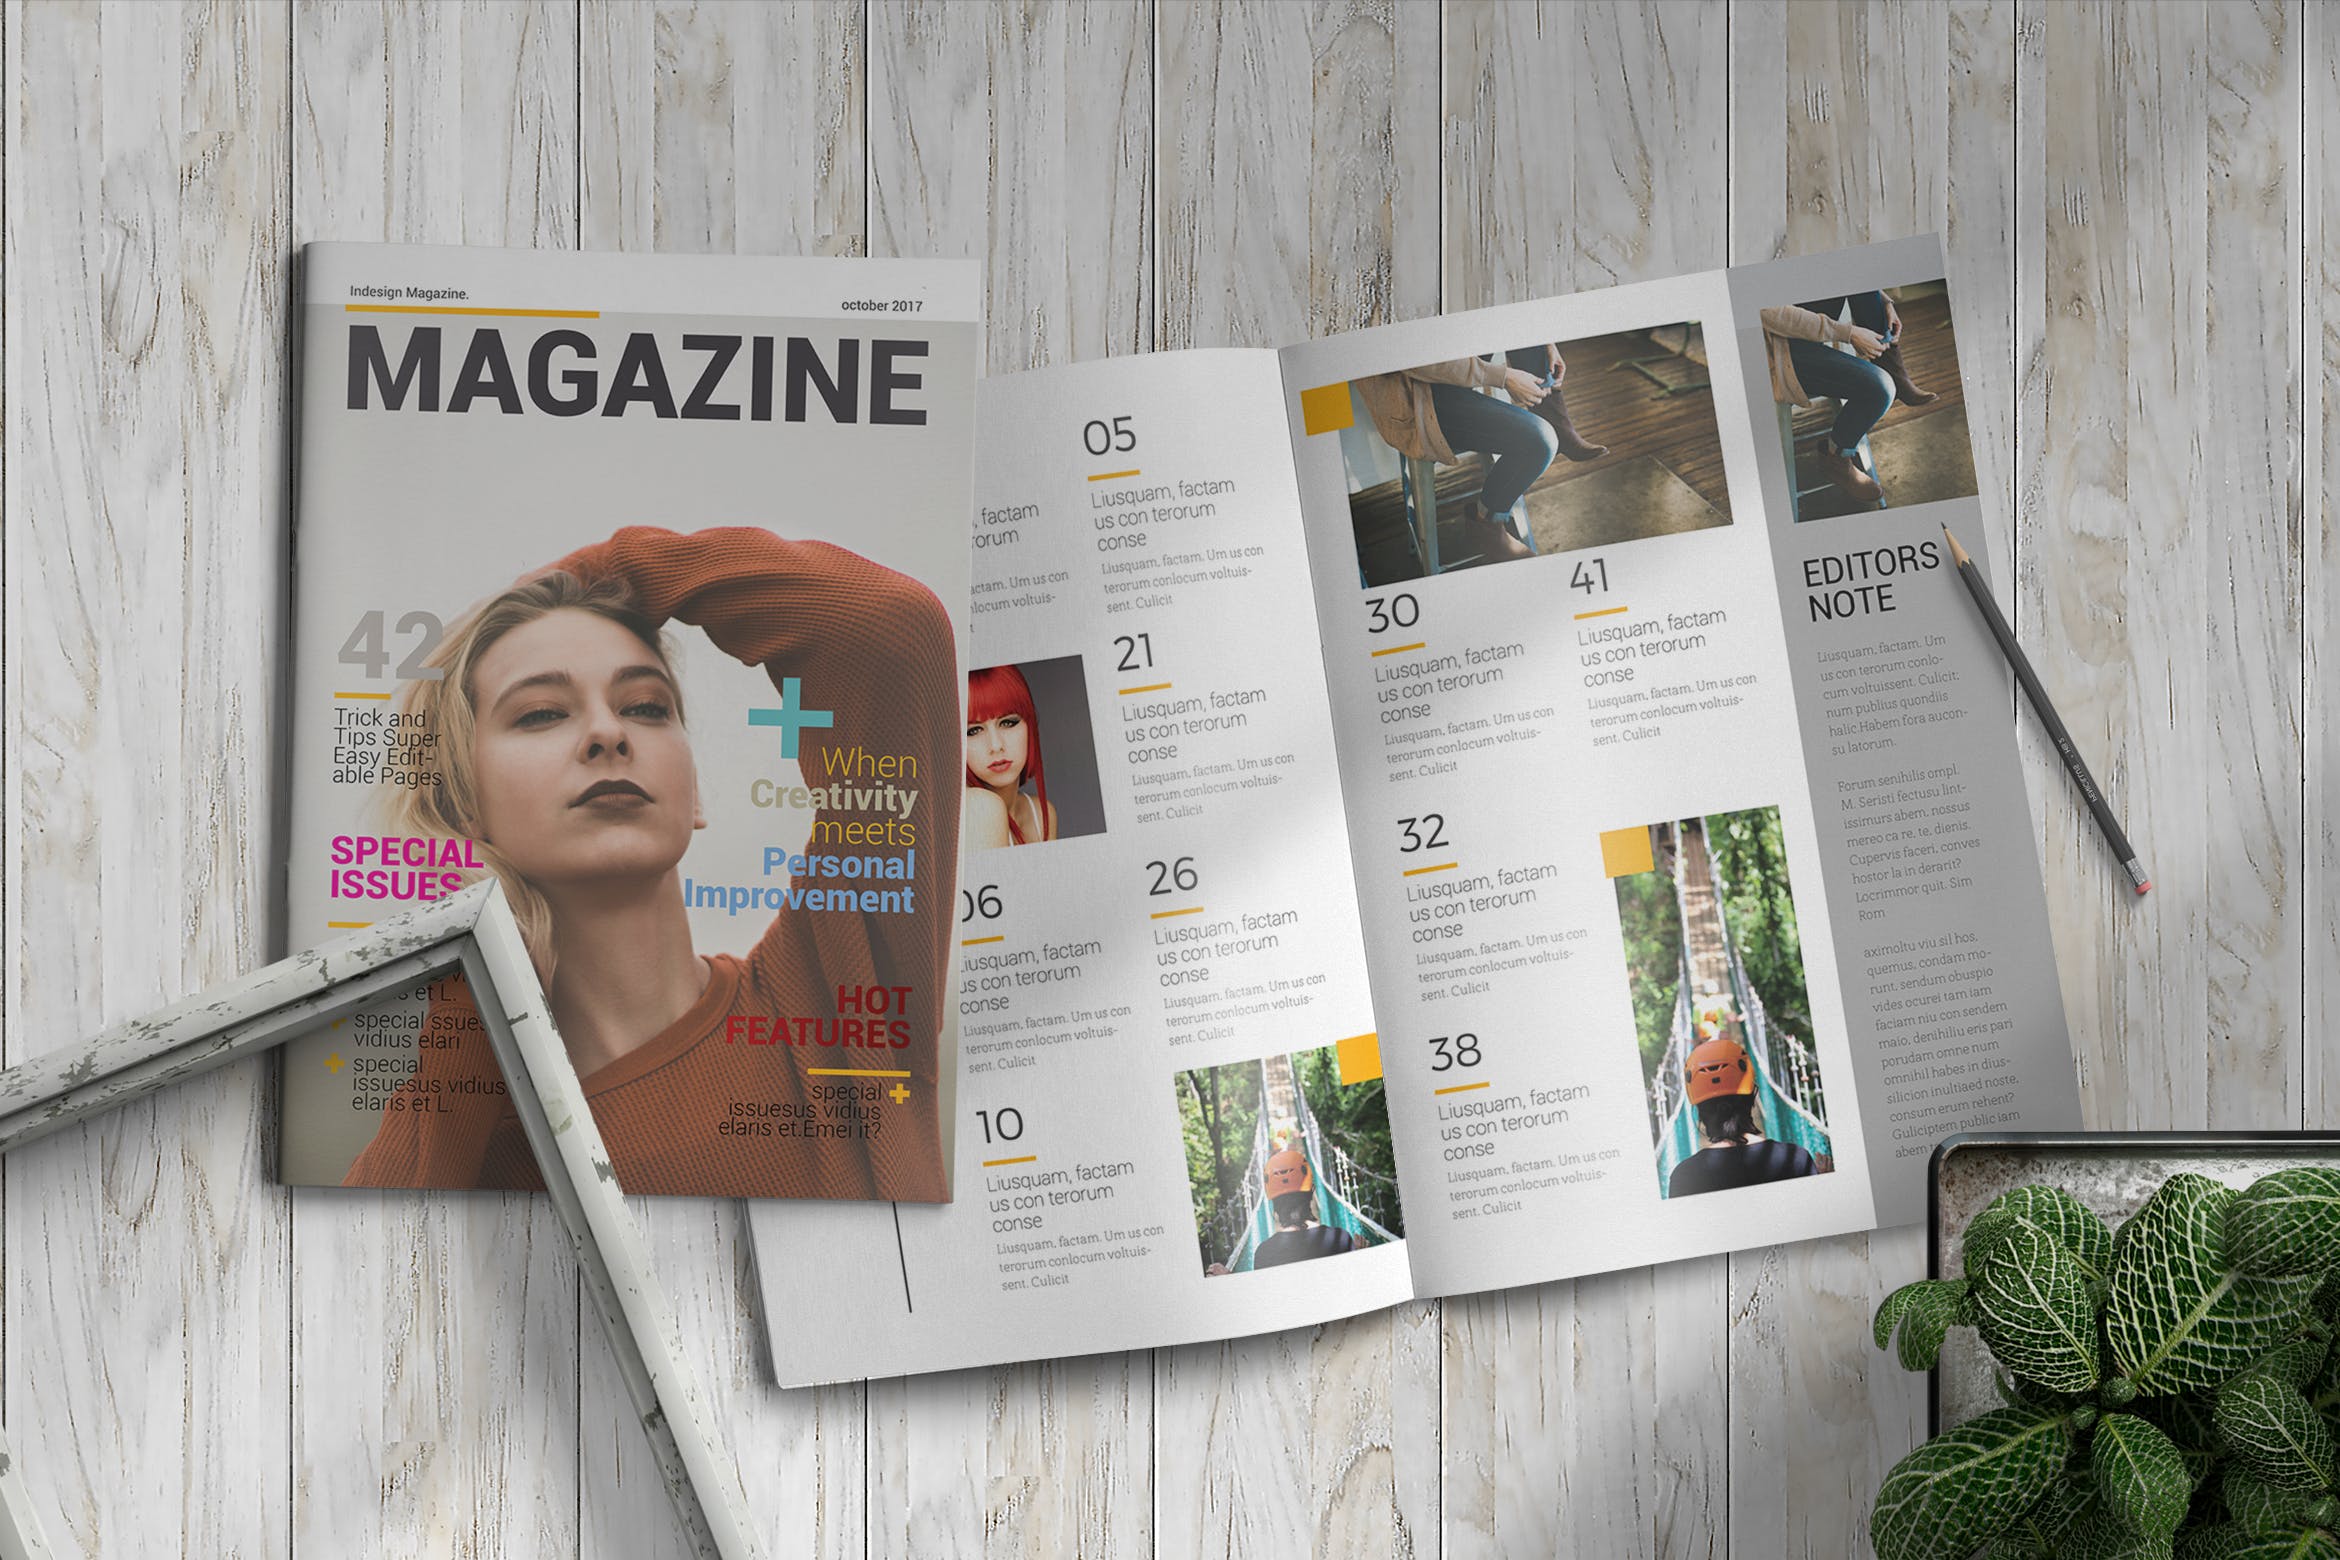 女性时尚主题16图库精选杂志版式设计InDesign模板 InDesign Magazine Template插图